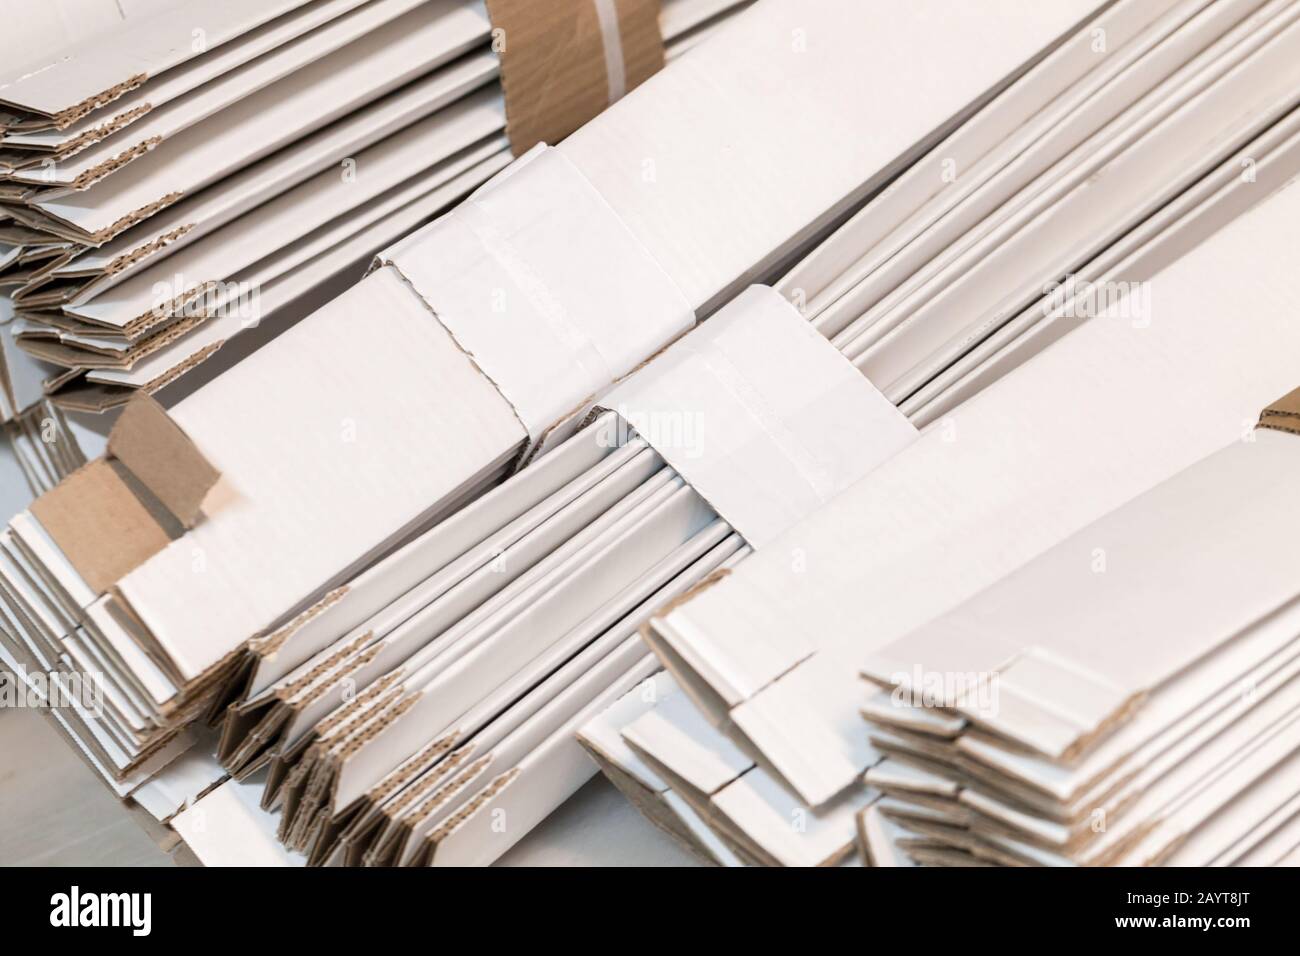 Boîtes en carton blanc pliées empilées, photo d'arrière-plan de l'emballage industriel Banque D'Images